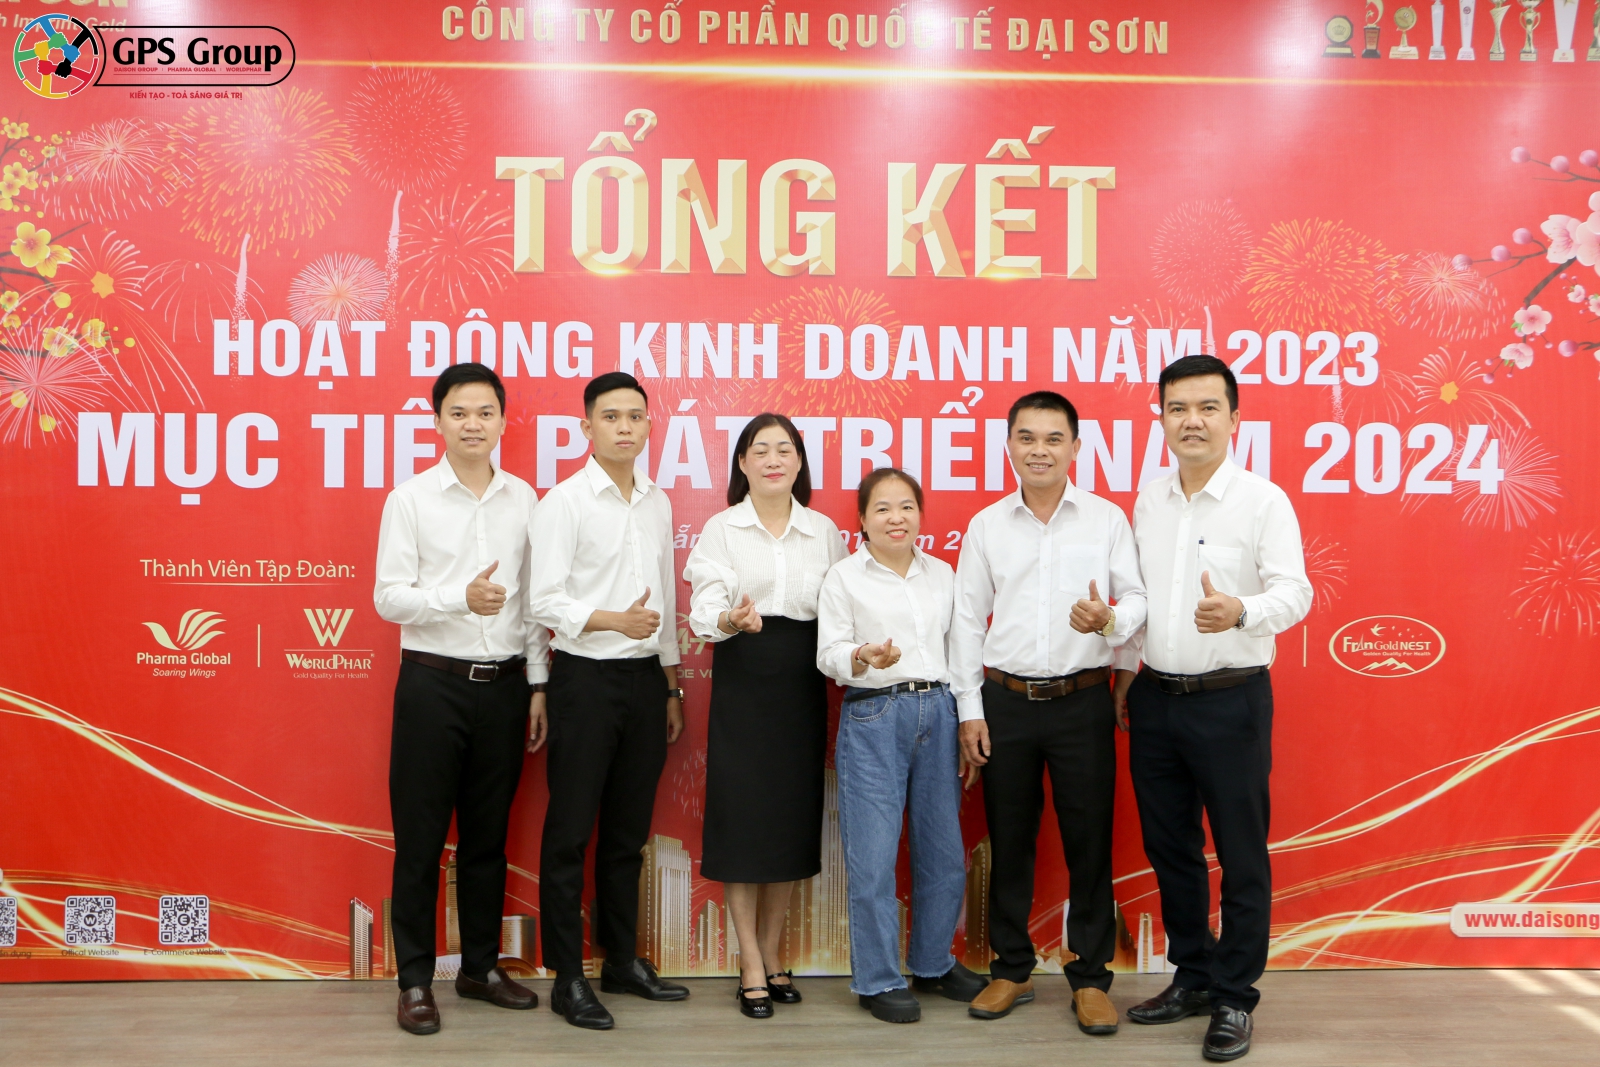 Team Trung Trung Bộ Đại Sơn